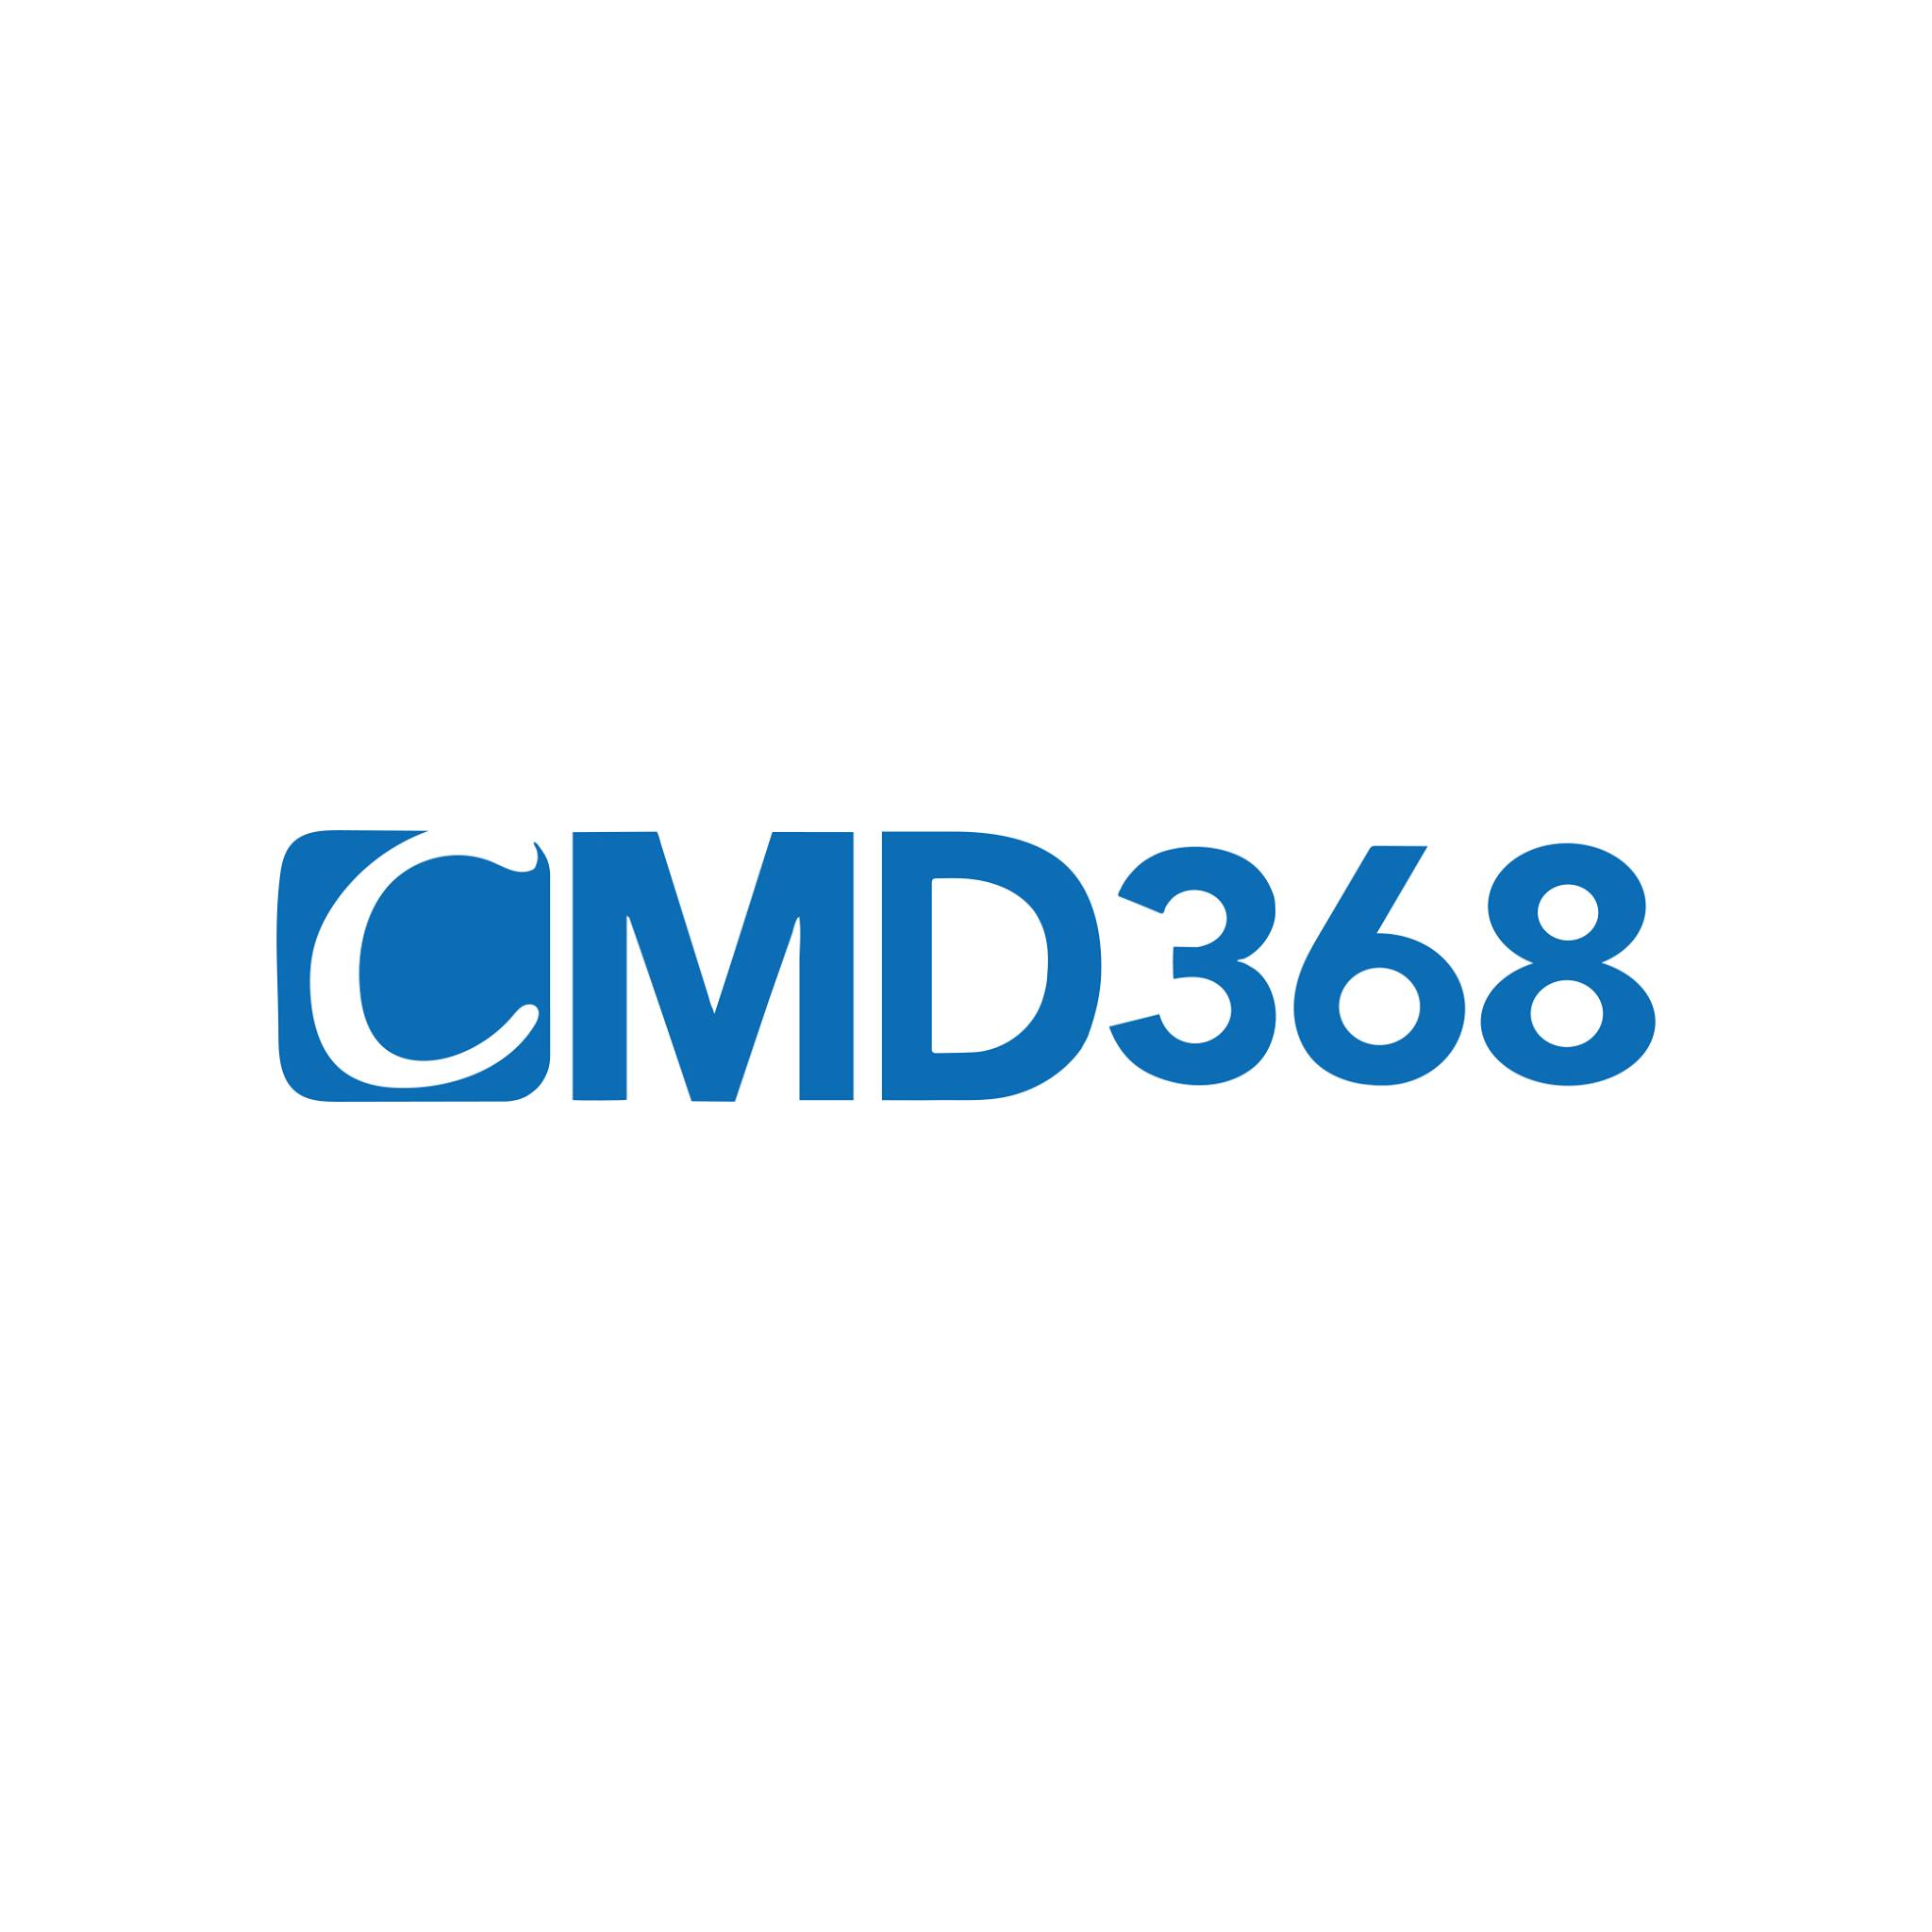 CMD368 - Nhà cái hàng đầu Châu Á